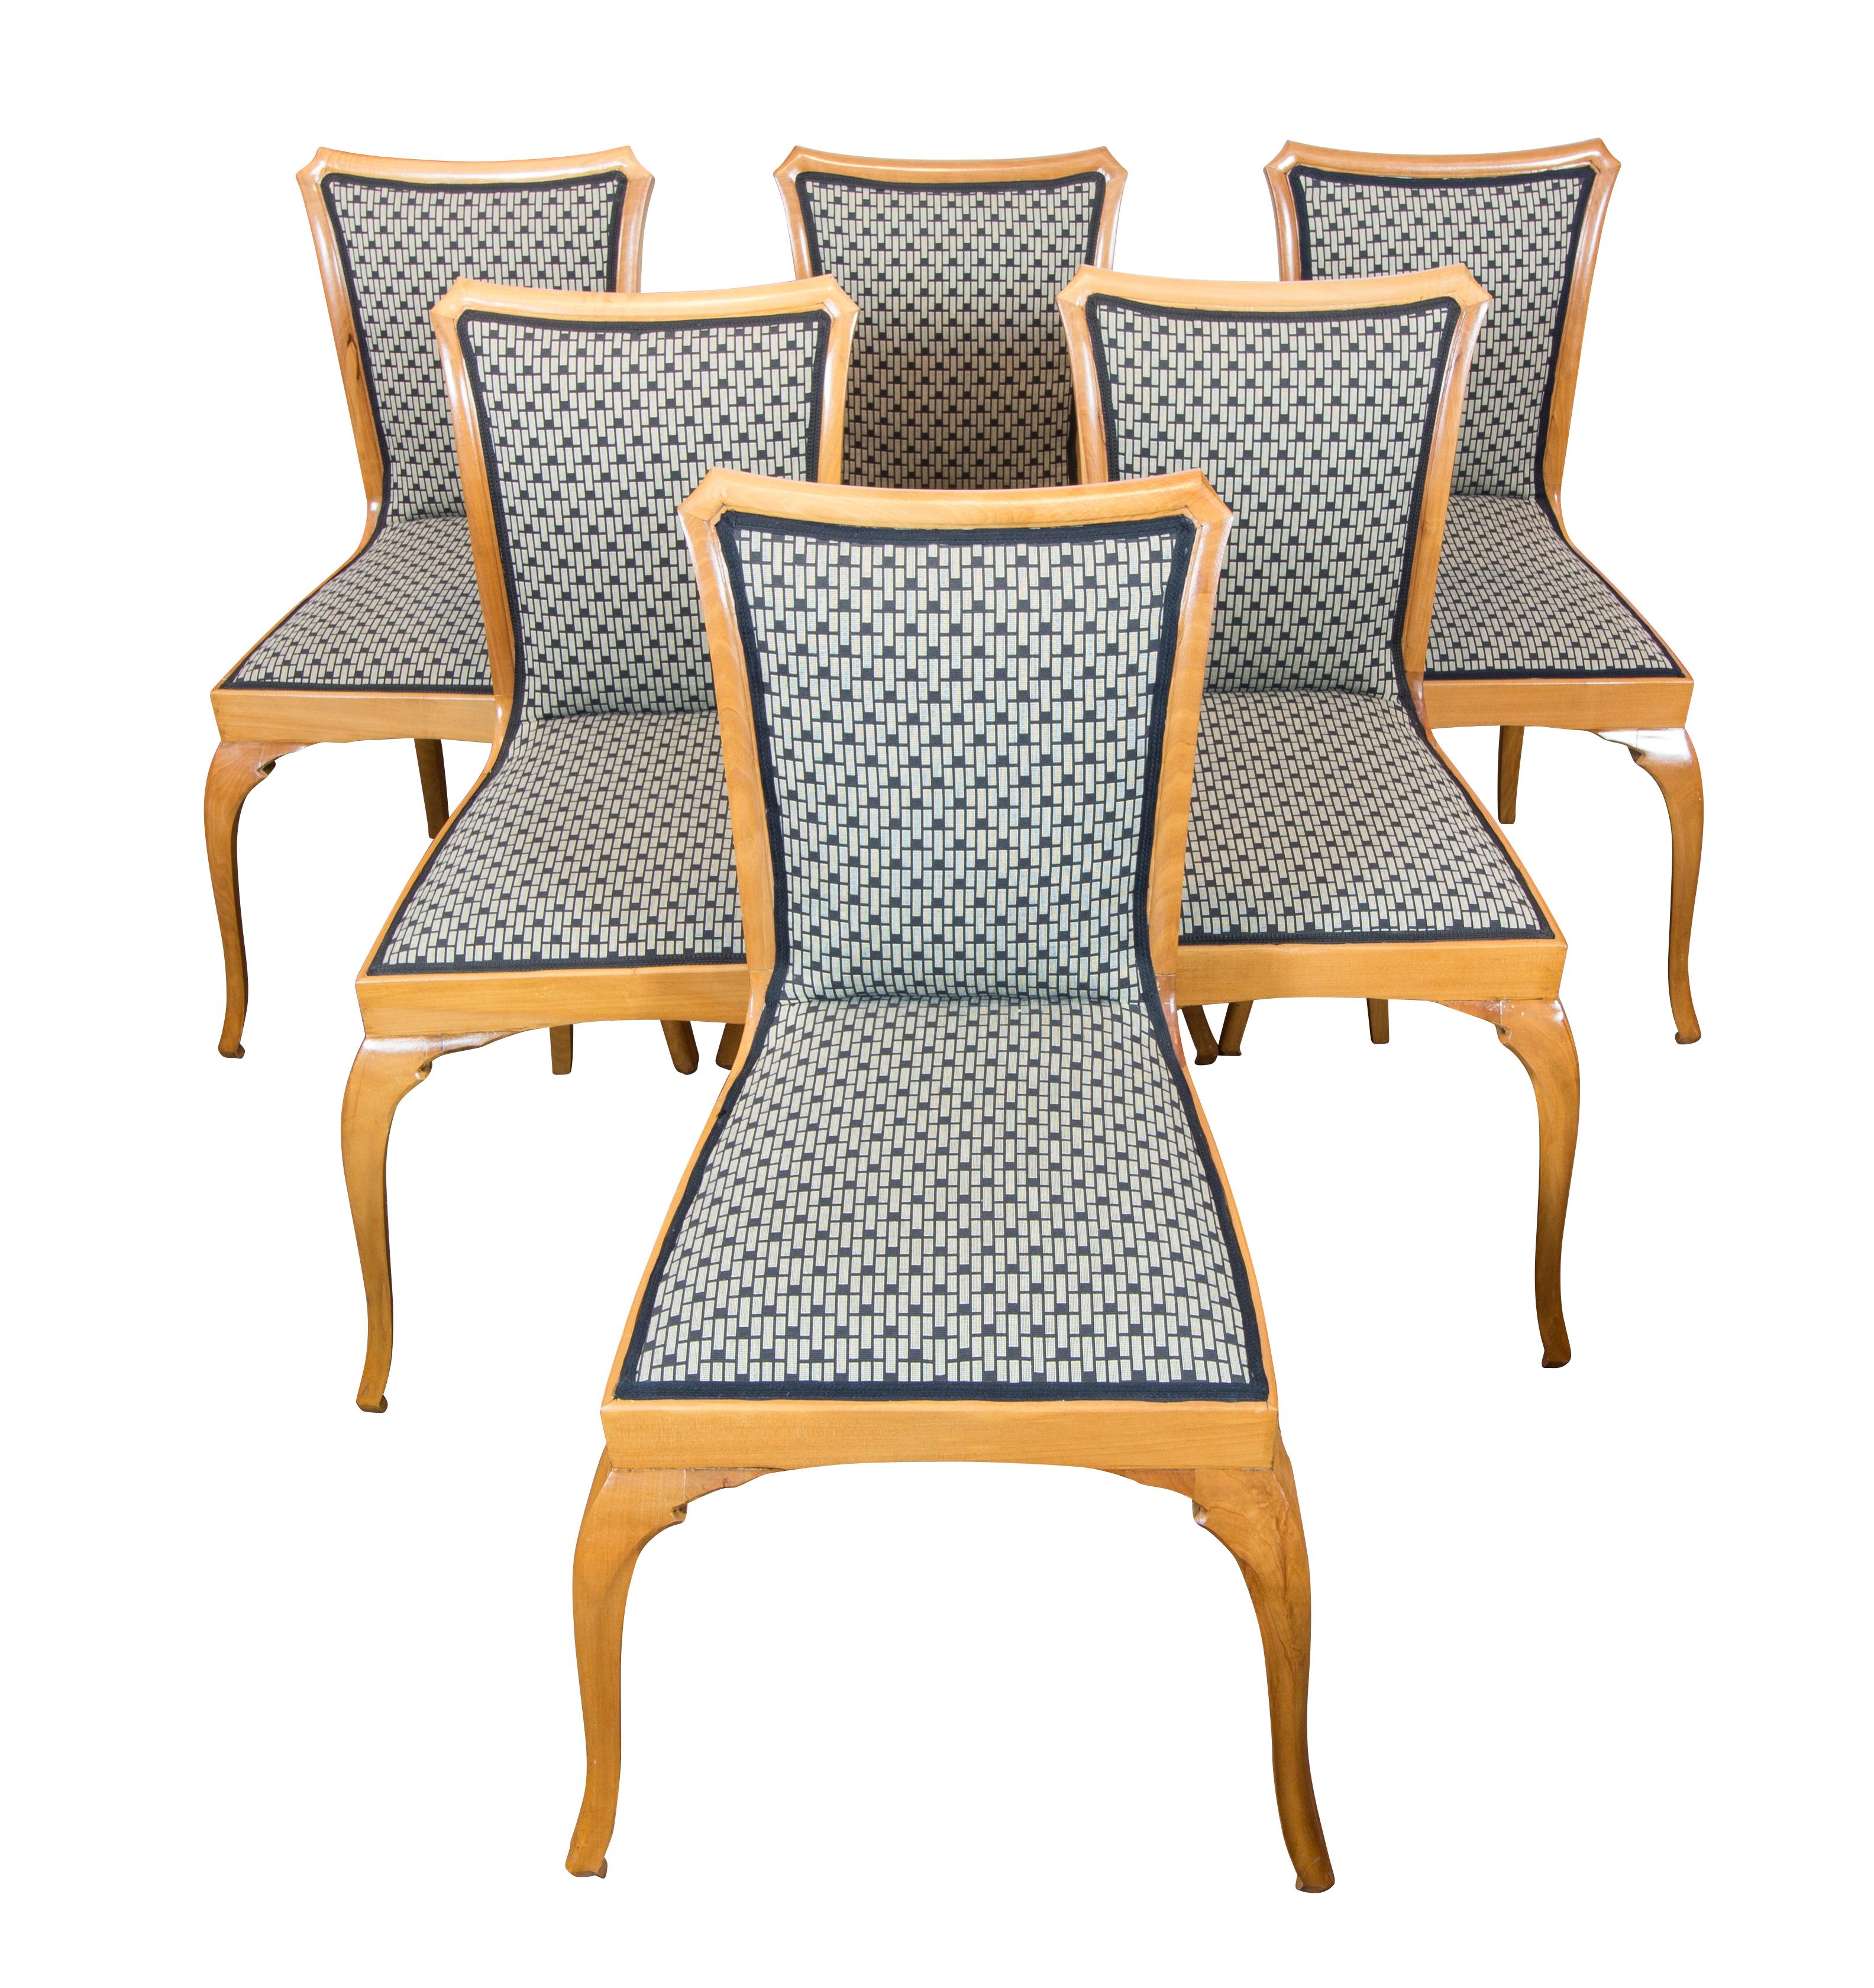 Sehr schönes Set, bestehend aus ausziehbarem Tisch und 6 Stühlen.
Das Set stammt aus der Zeit des Art Déco / Jugendstils um 1915 und ist aus massivem Birnbaumholz gefertigt. Die Stühle sind neu gepolstert. 
Der Tisch kann um 35 cm und weitere 45